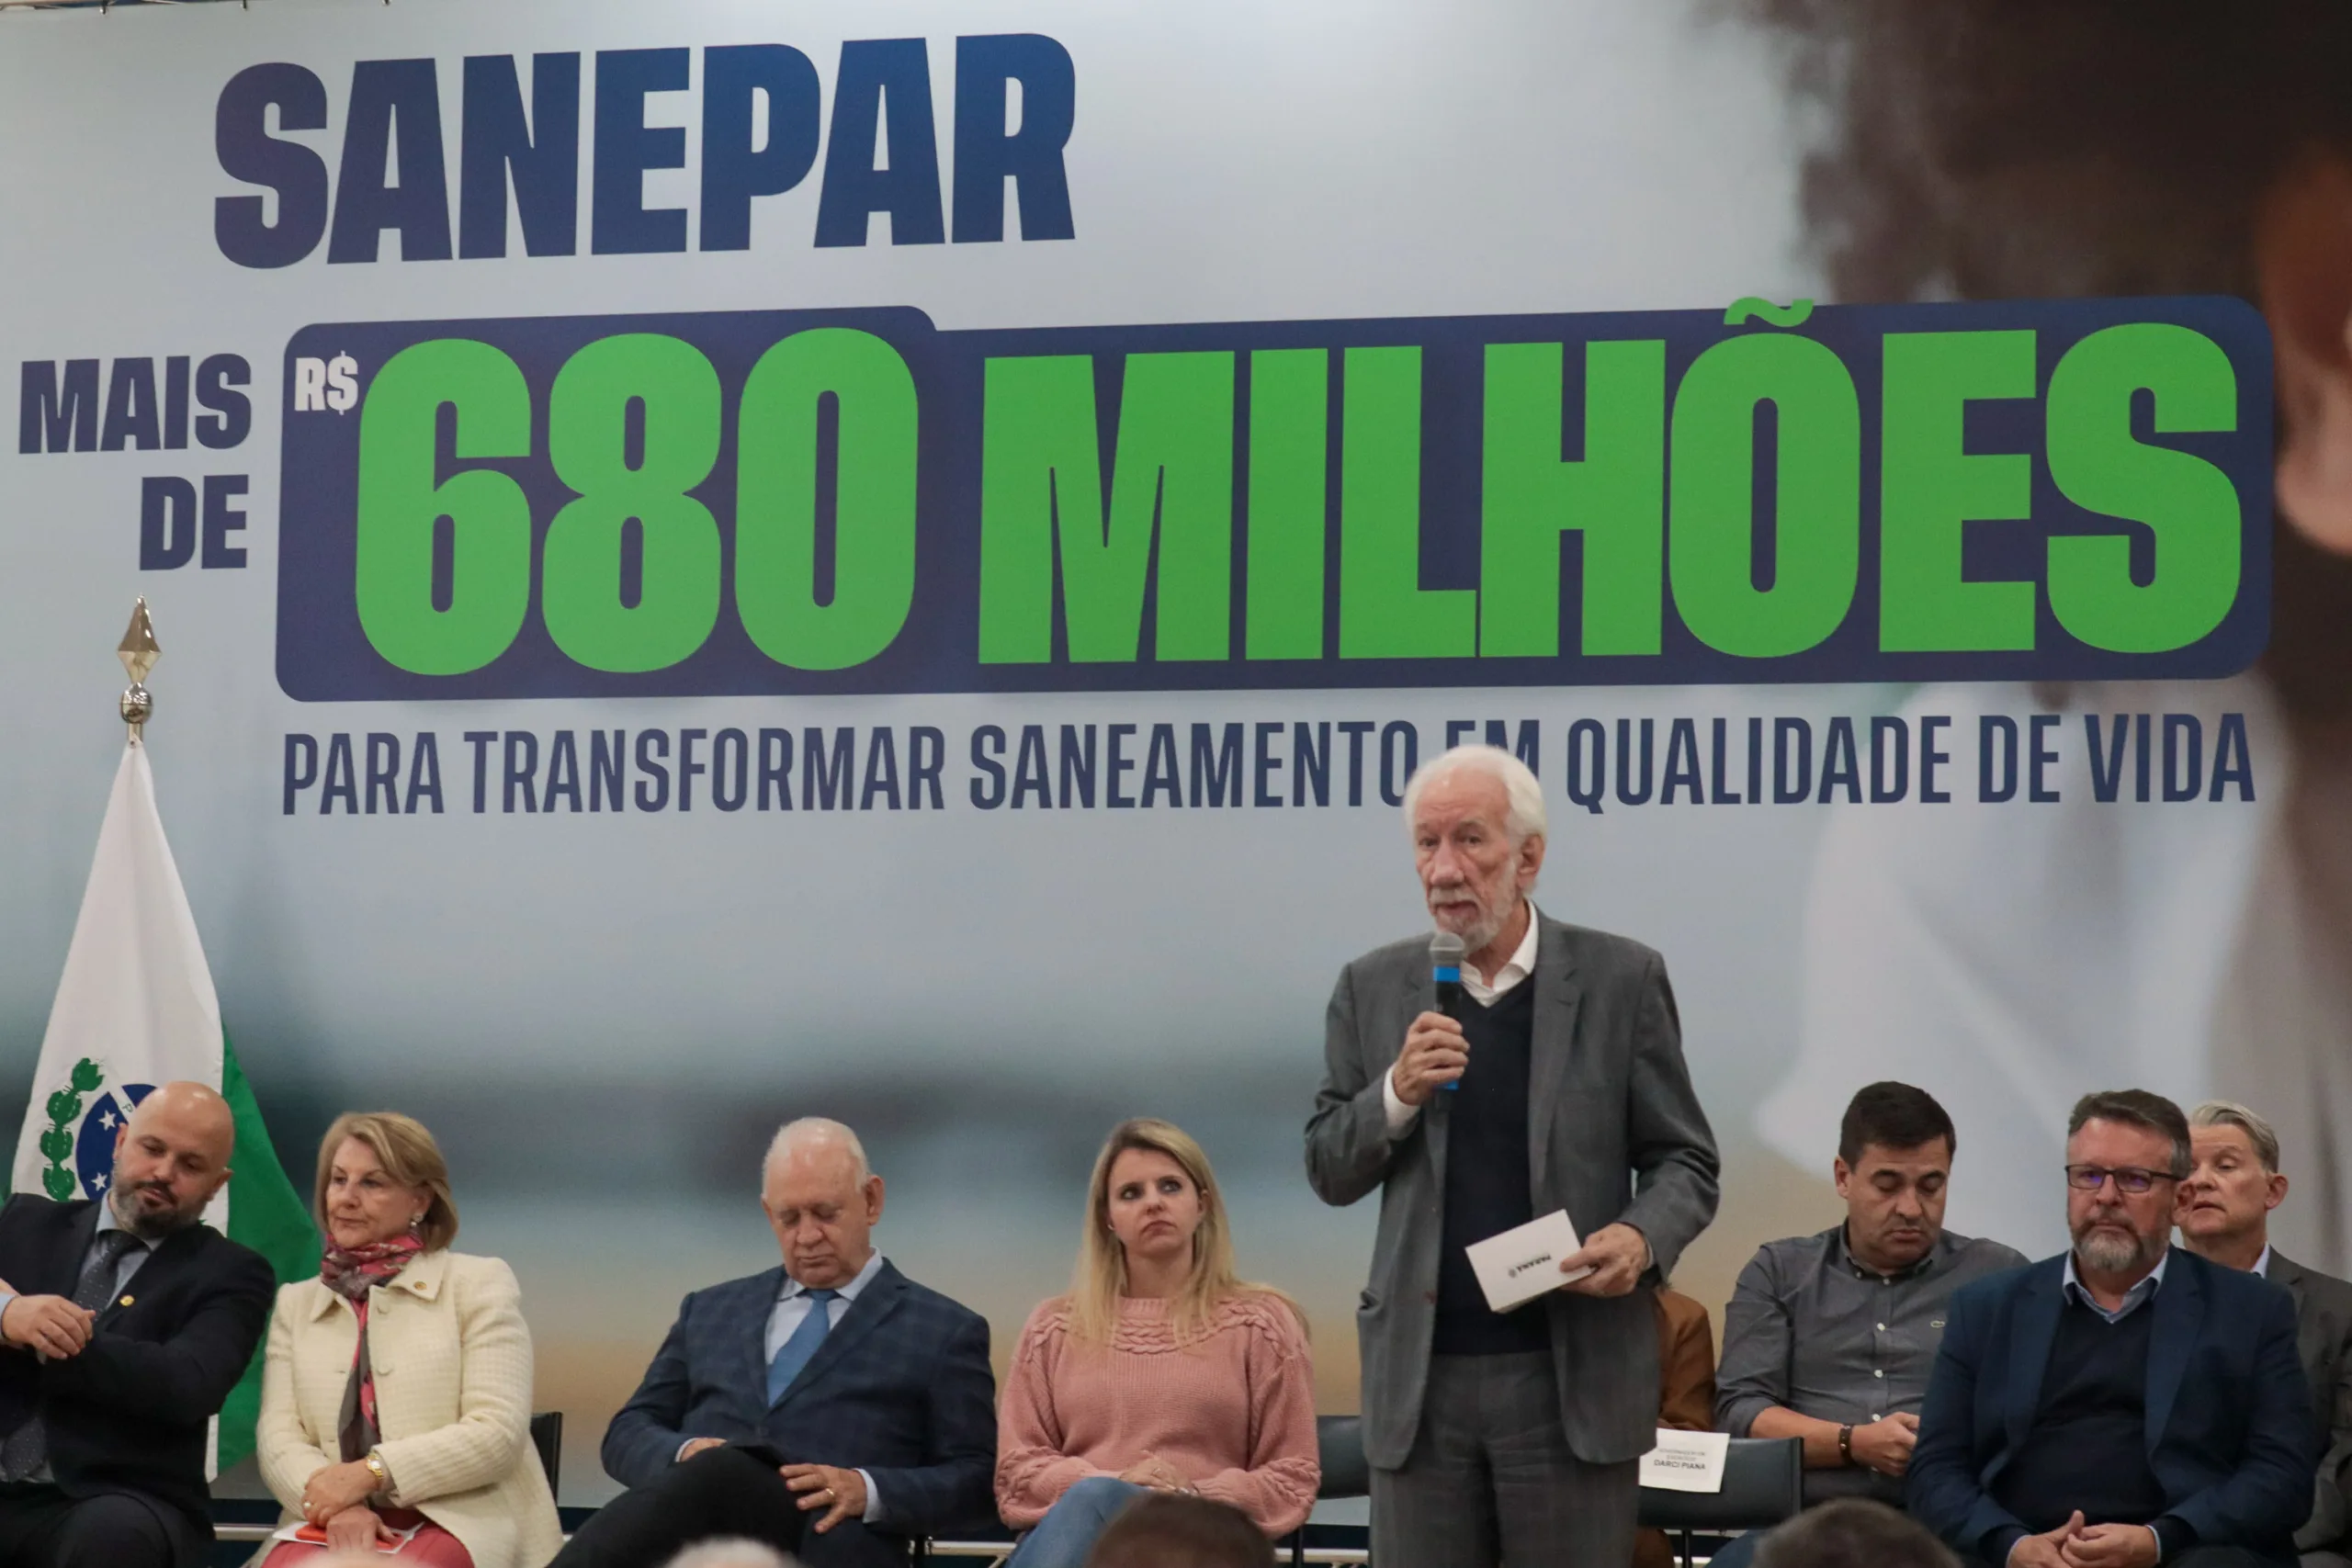 O governador em exercício Darci Piana e o presidente da Sanepar, Wilson Bley, anunciaram nesta terça-feira (2) um pacote de R$ 680 milhões em investimentos da empresa em obras de saneamento básico para dezenas municípios do Paraná.